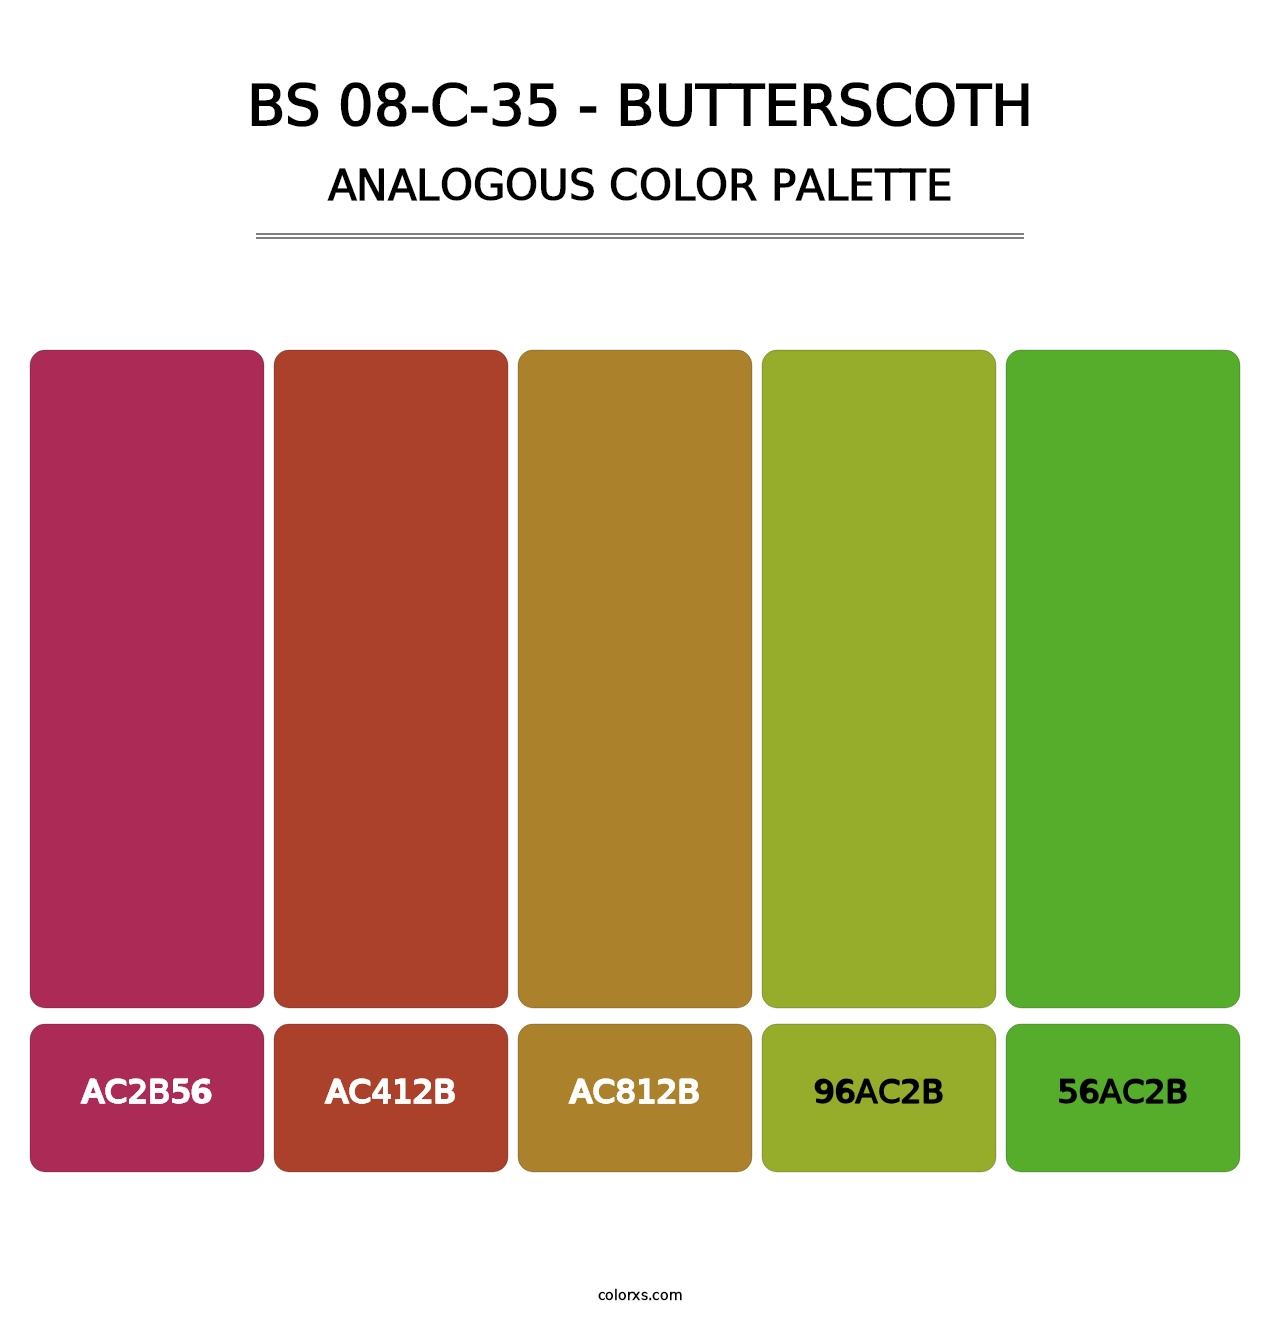 BS 08-C-35 - Butterscoth - Analogous Color Palette